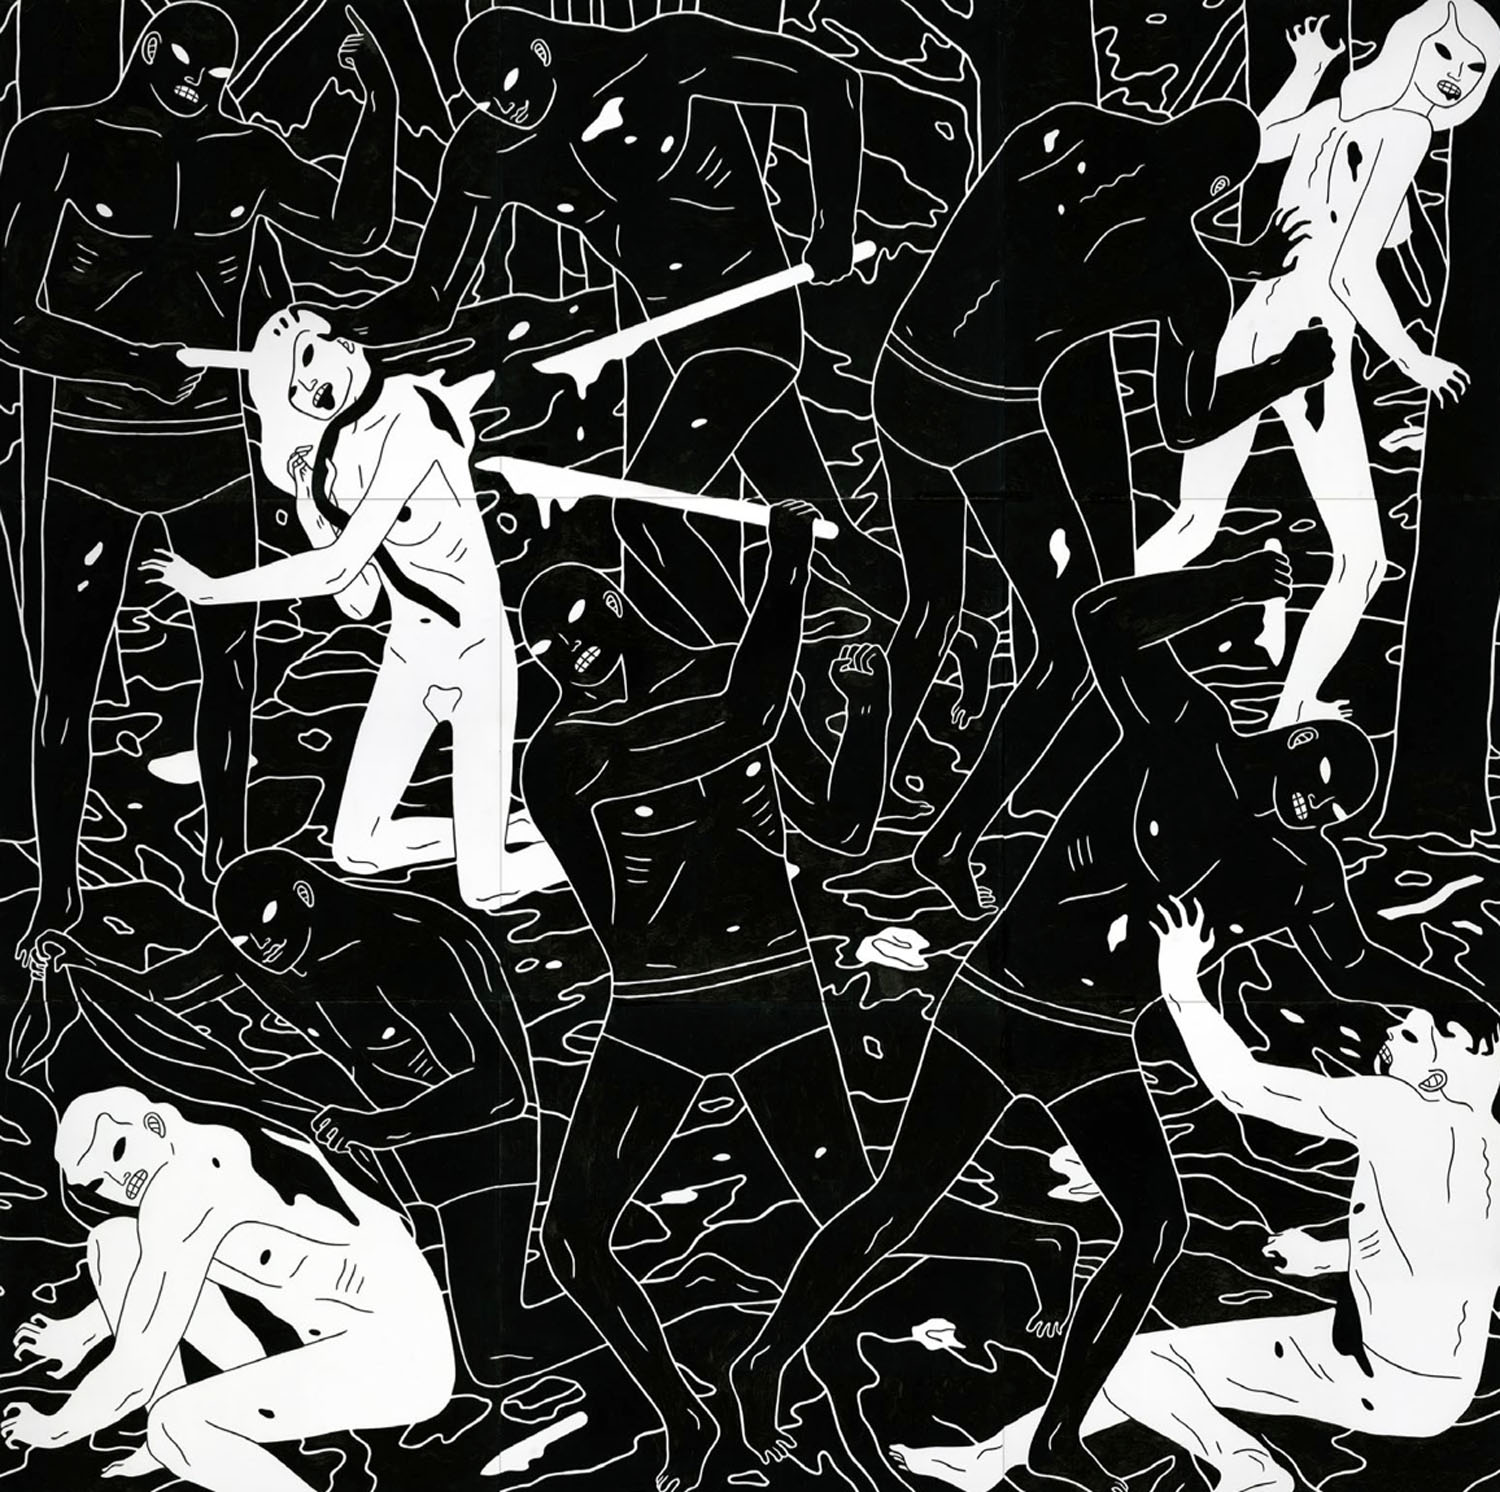 cleon-peterson-violencia-brutal-arte-graffiti-12